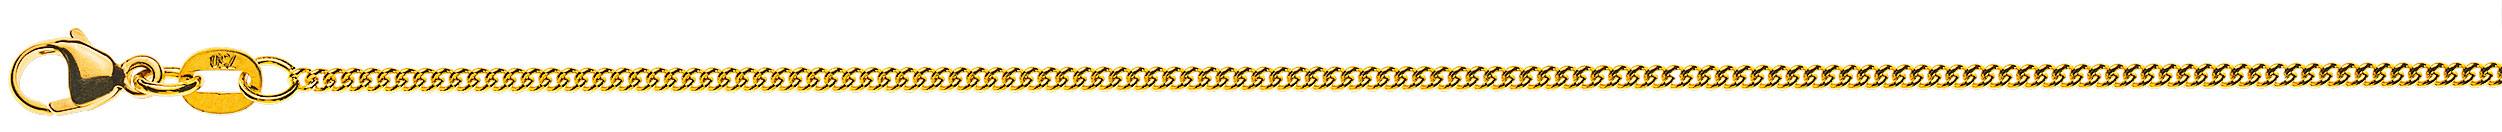 AURONOS Prestige Halskette Gelbgold 18K Rundpanzerkette 45cm 1.6mm